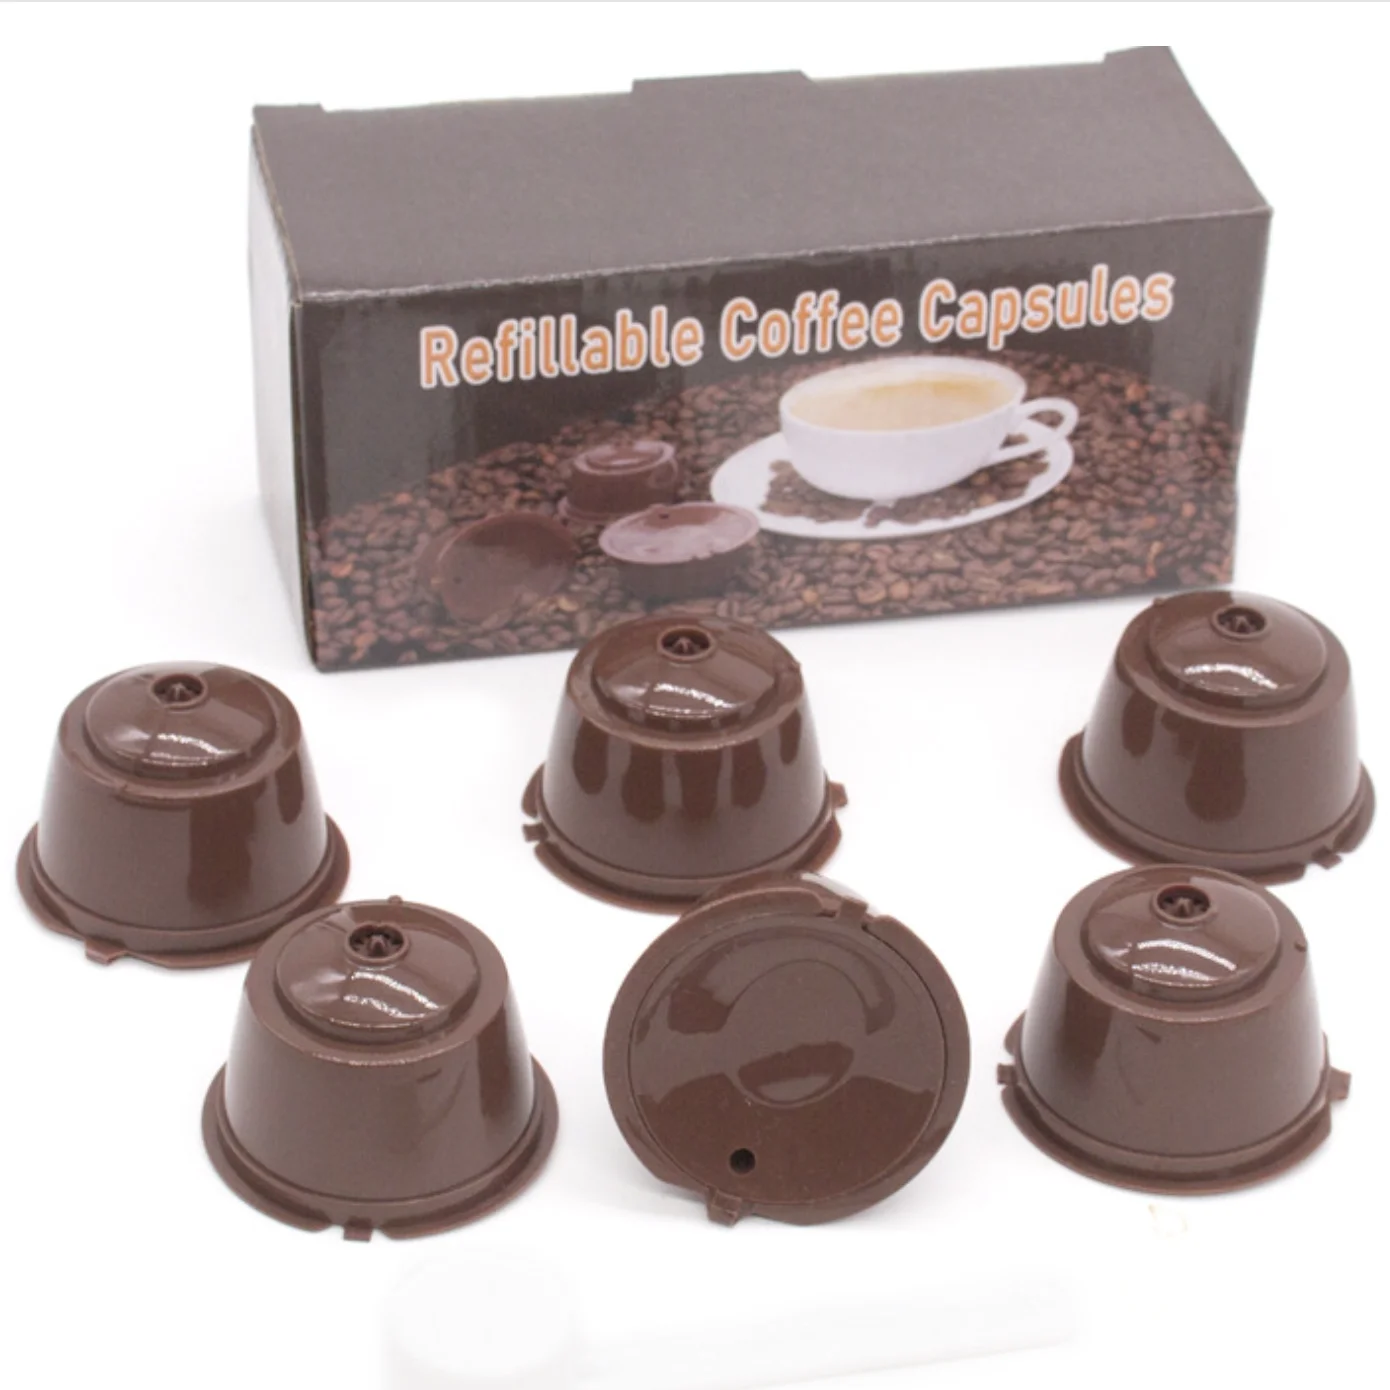 

Многоразовая кофейная капсула, фильтр, чашка для Nescafe Dolce Gusto, многоразовые колпачки, фотофильтры, корзины, мягкий вкус, сладкий